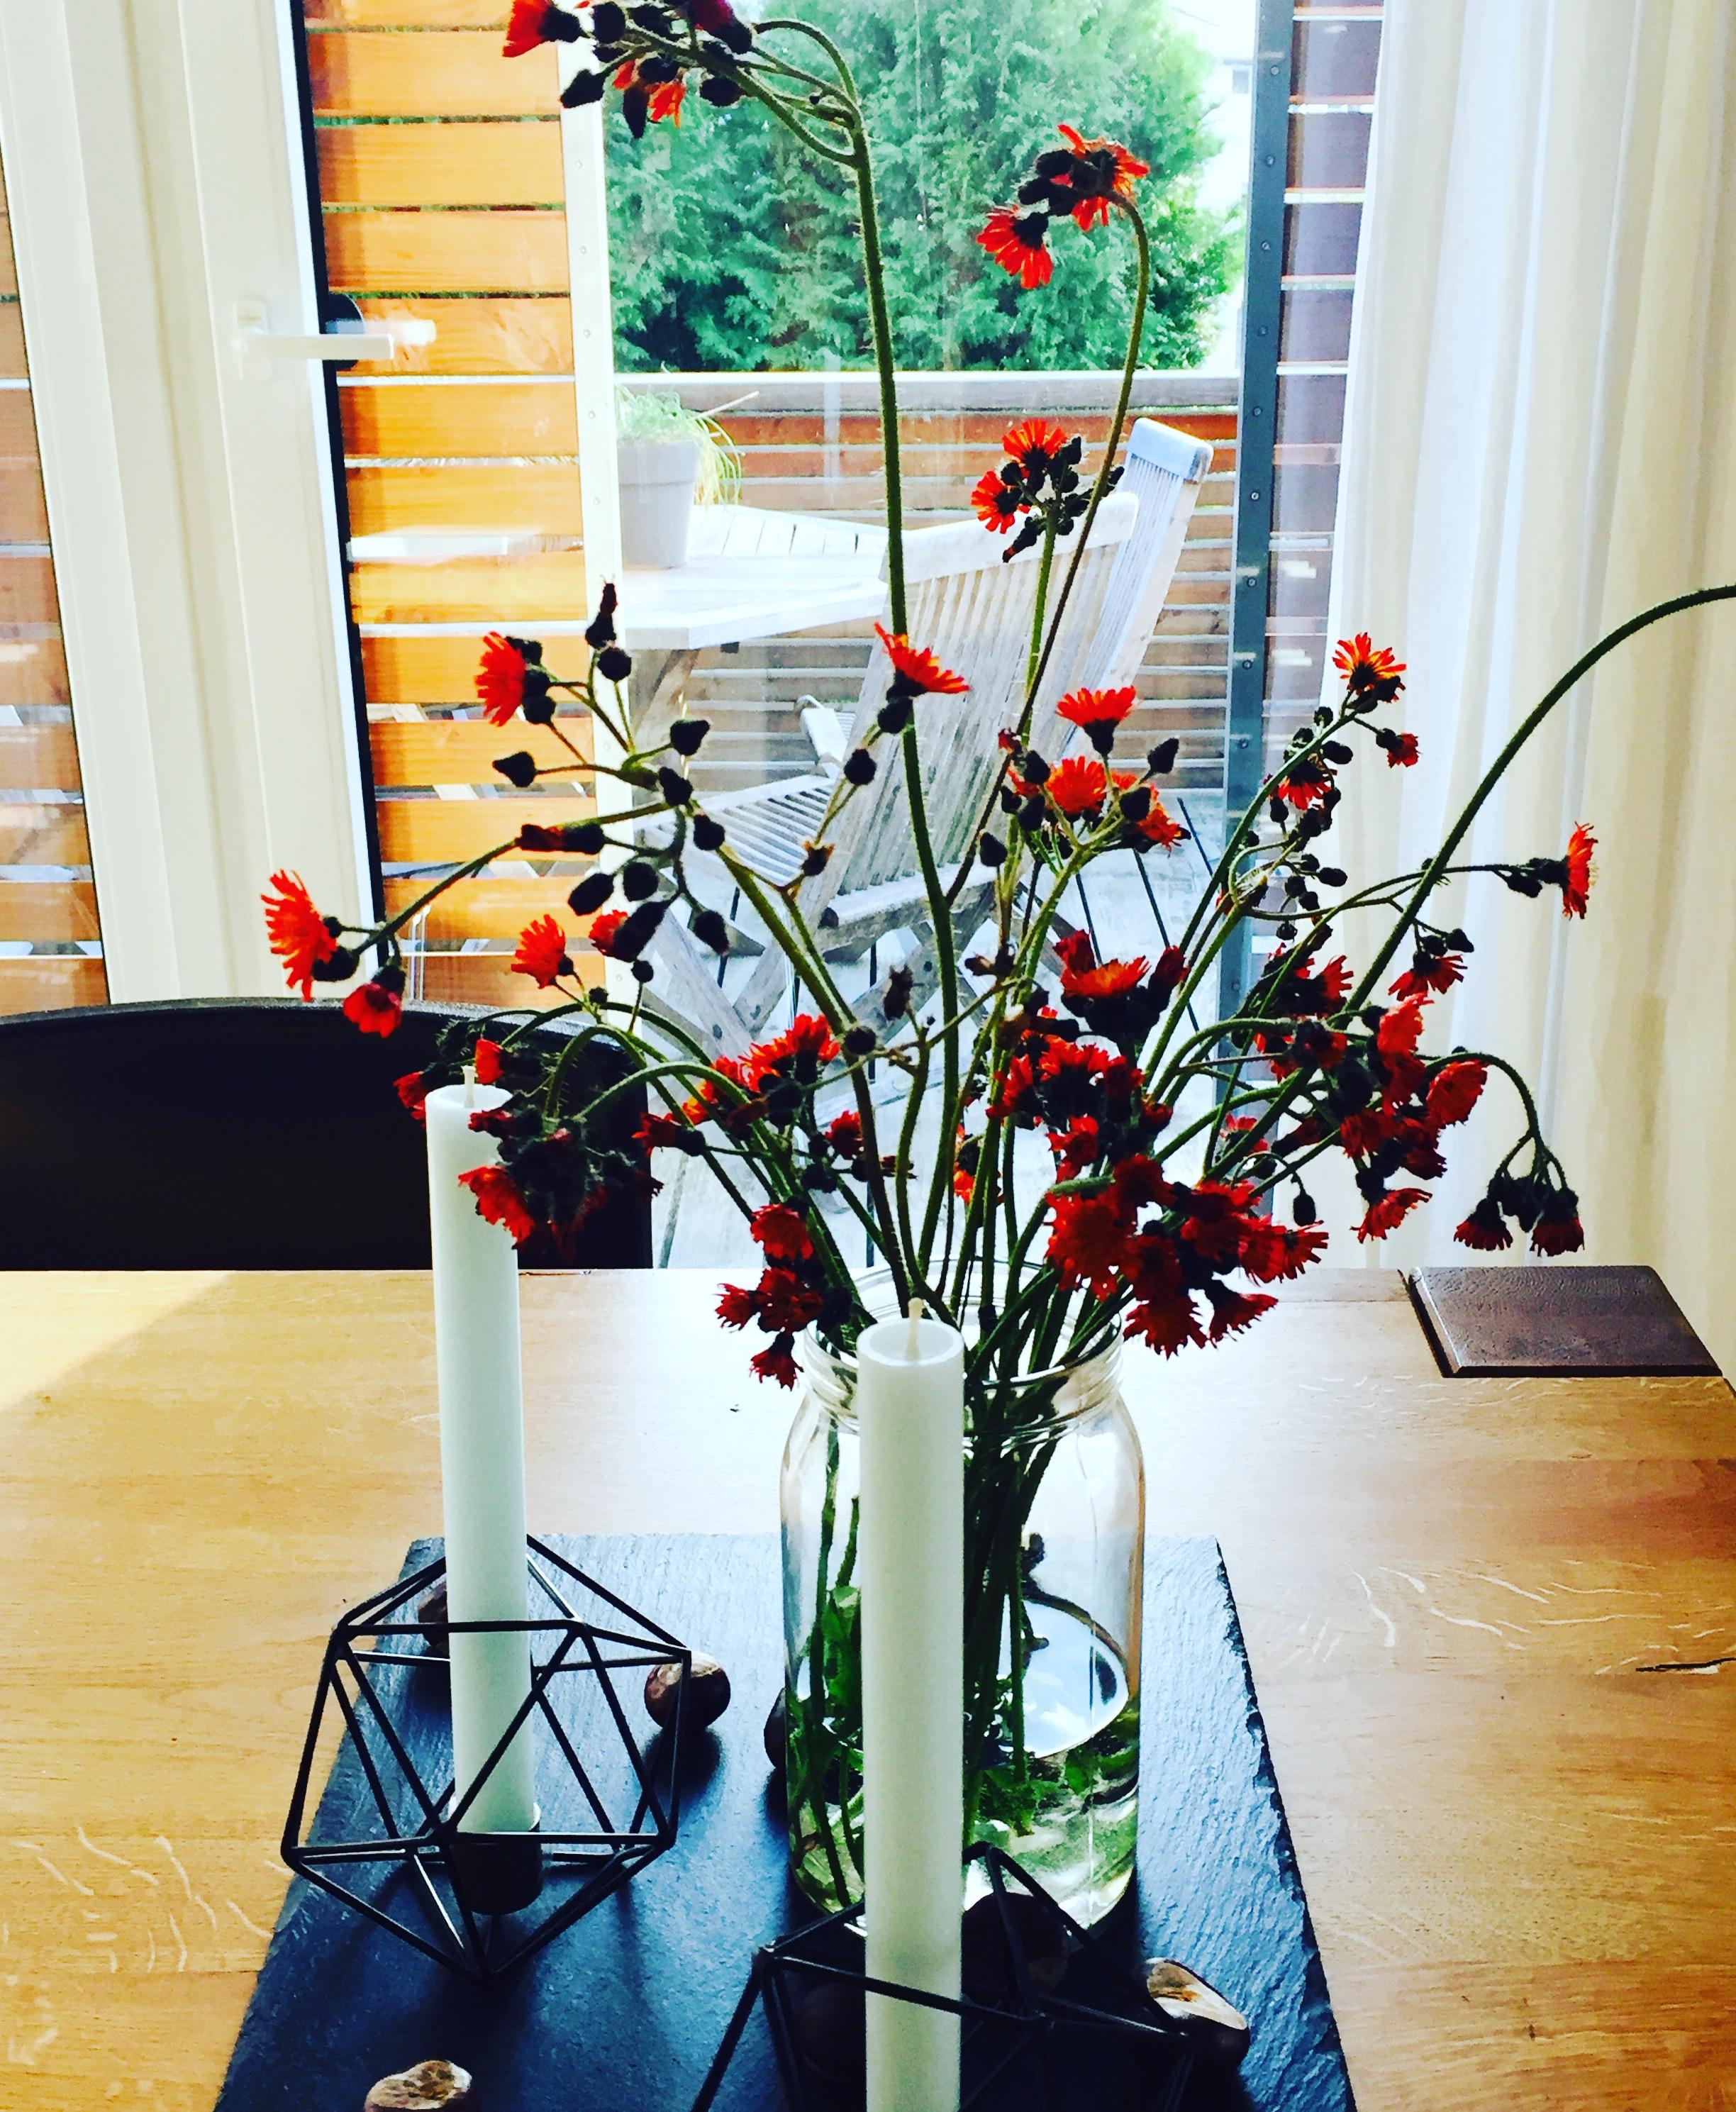 Herbstliches Wiesenglück gefunden beim Sonntagsspaziergang ...Blumen & Kastanien; Kerzenständer von #hübschinterieur